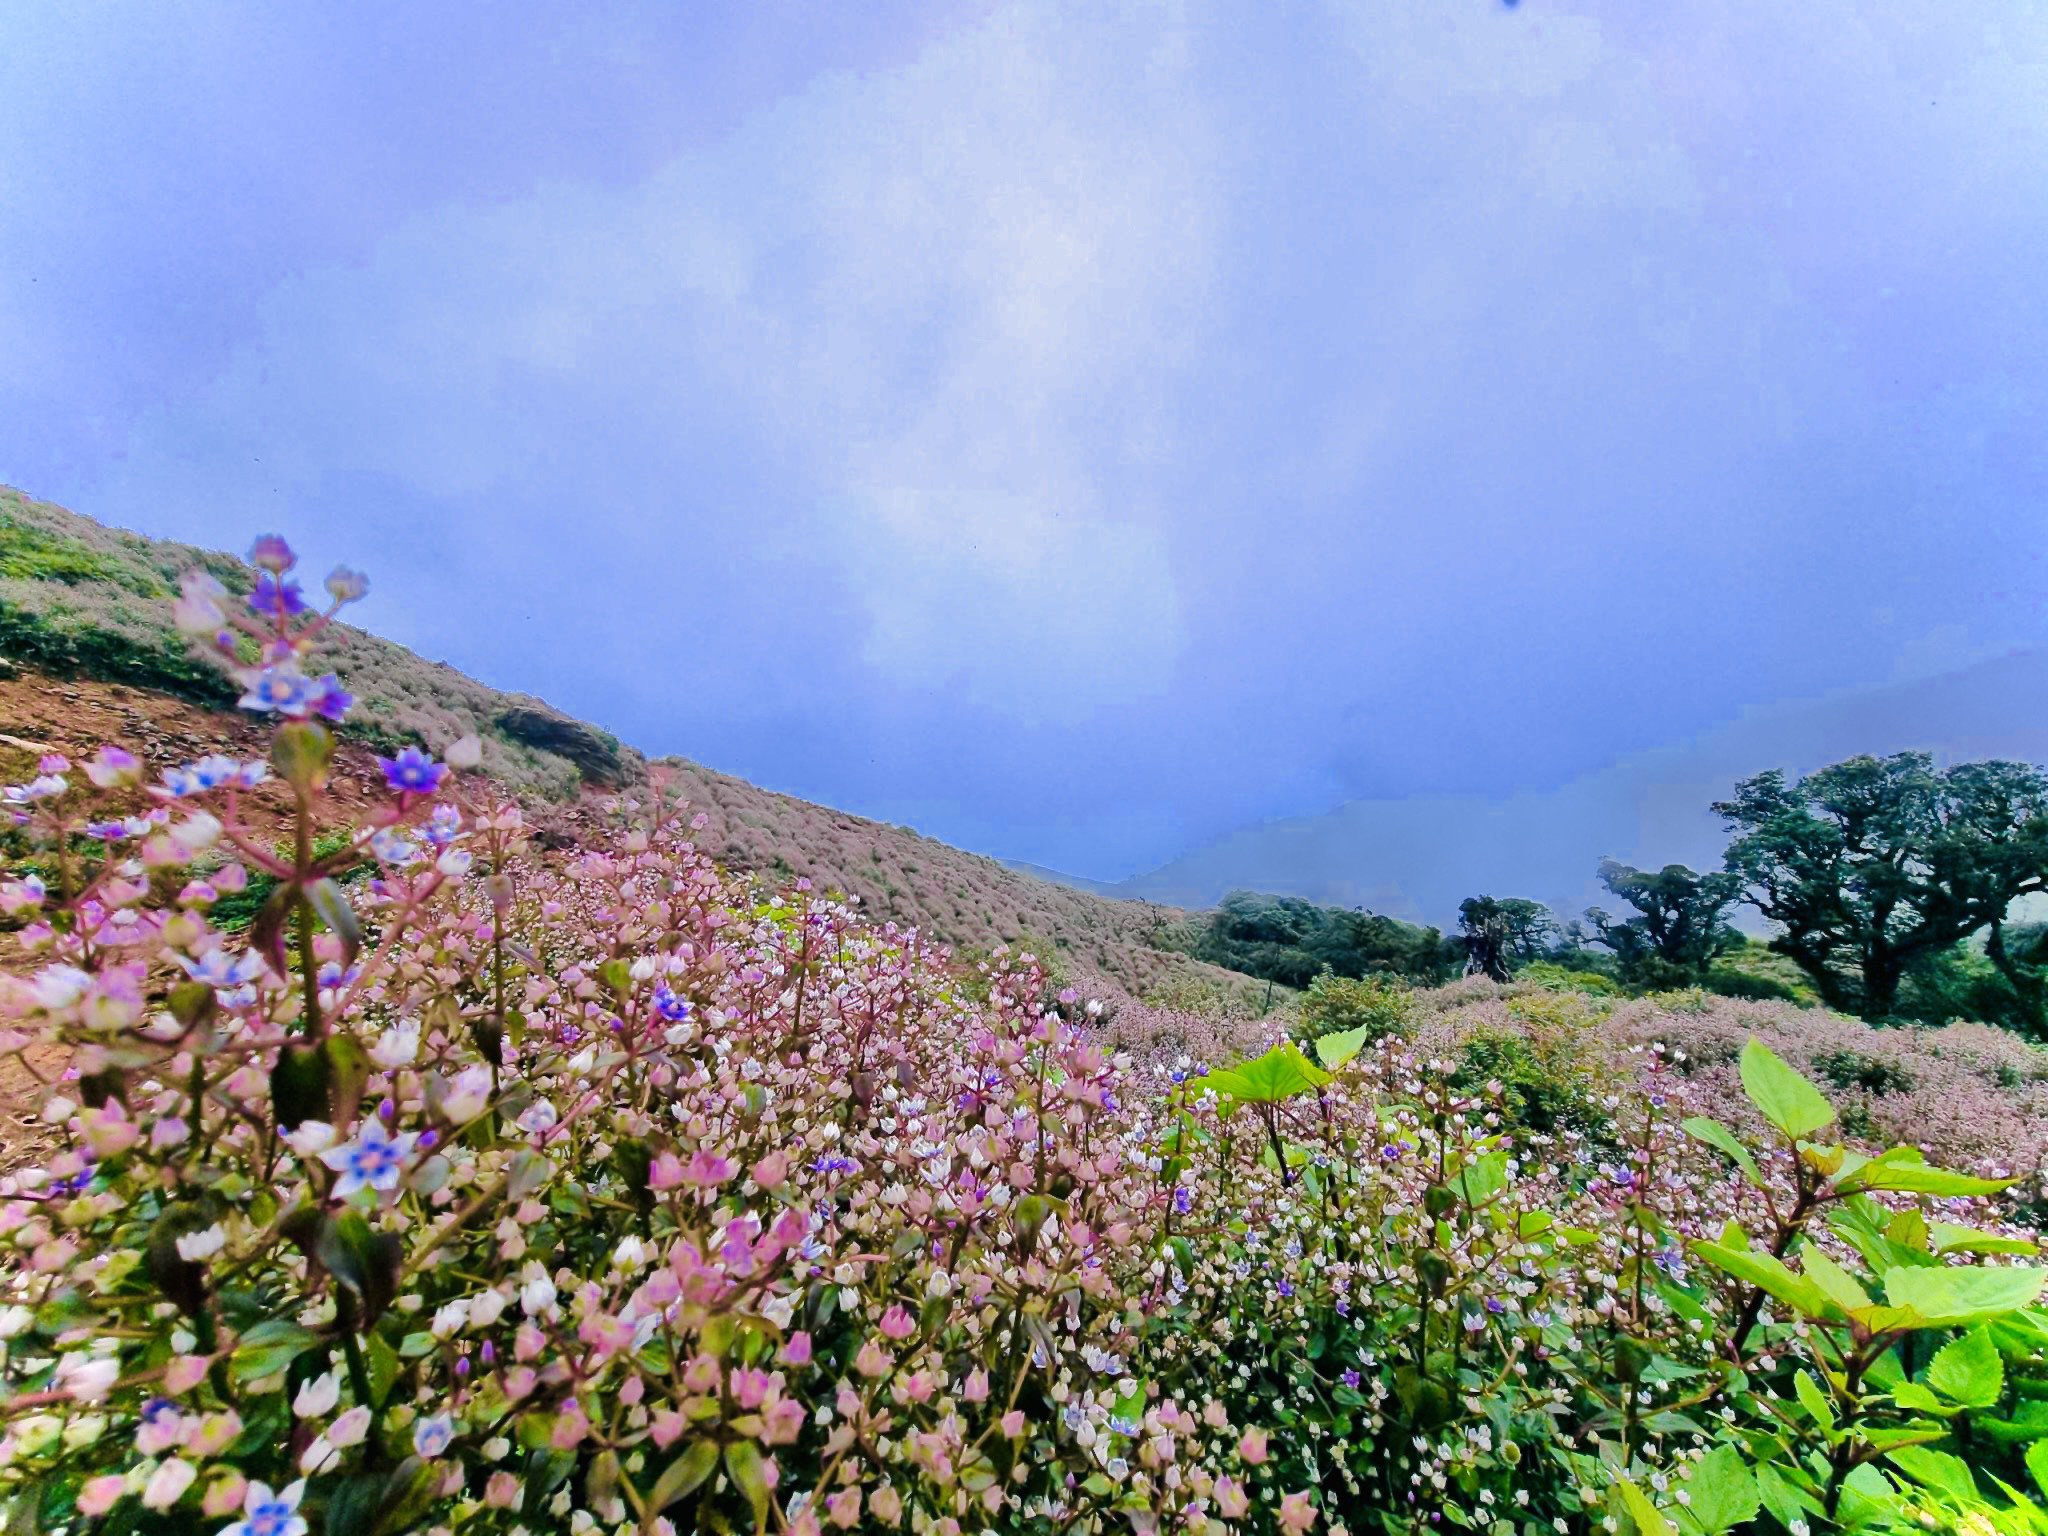 Chinh phục thiên đường mây, mê mẩn ngắm loài hoa đẹp như mơ nơi đỉnh núi - 1